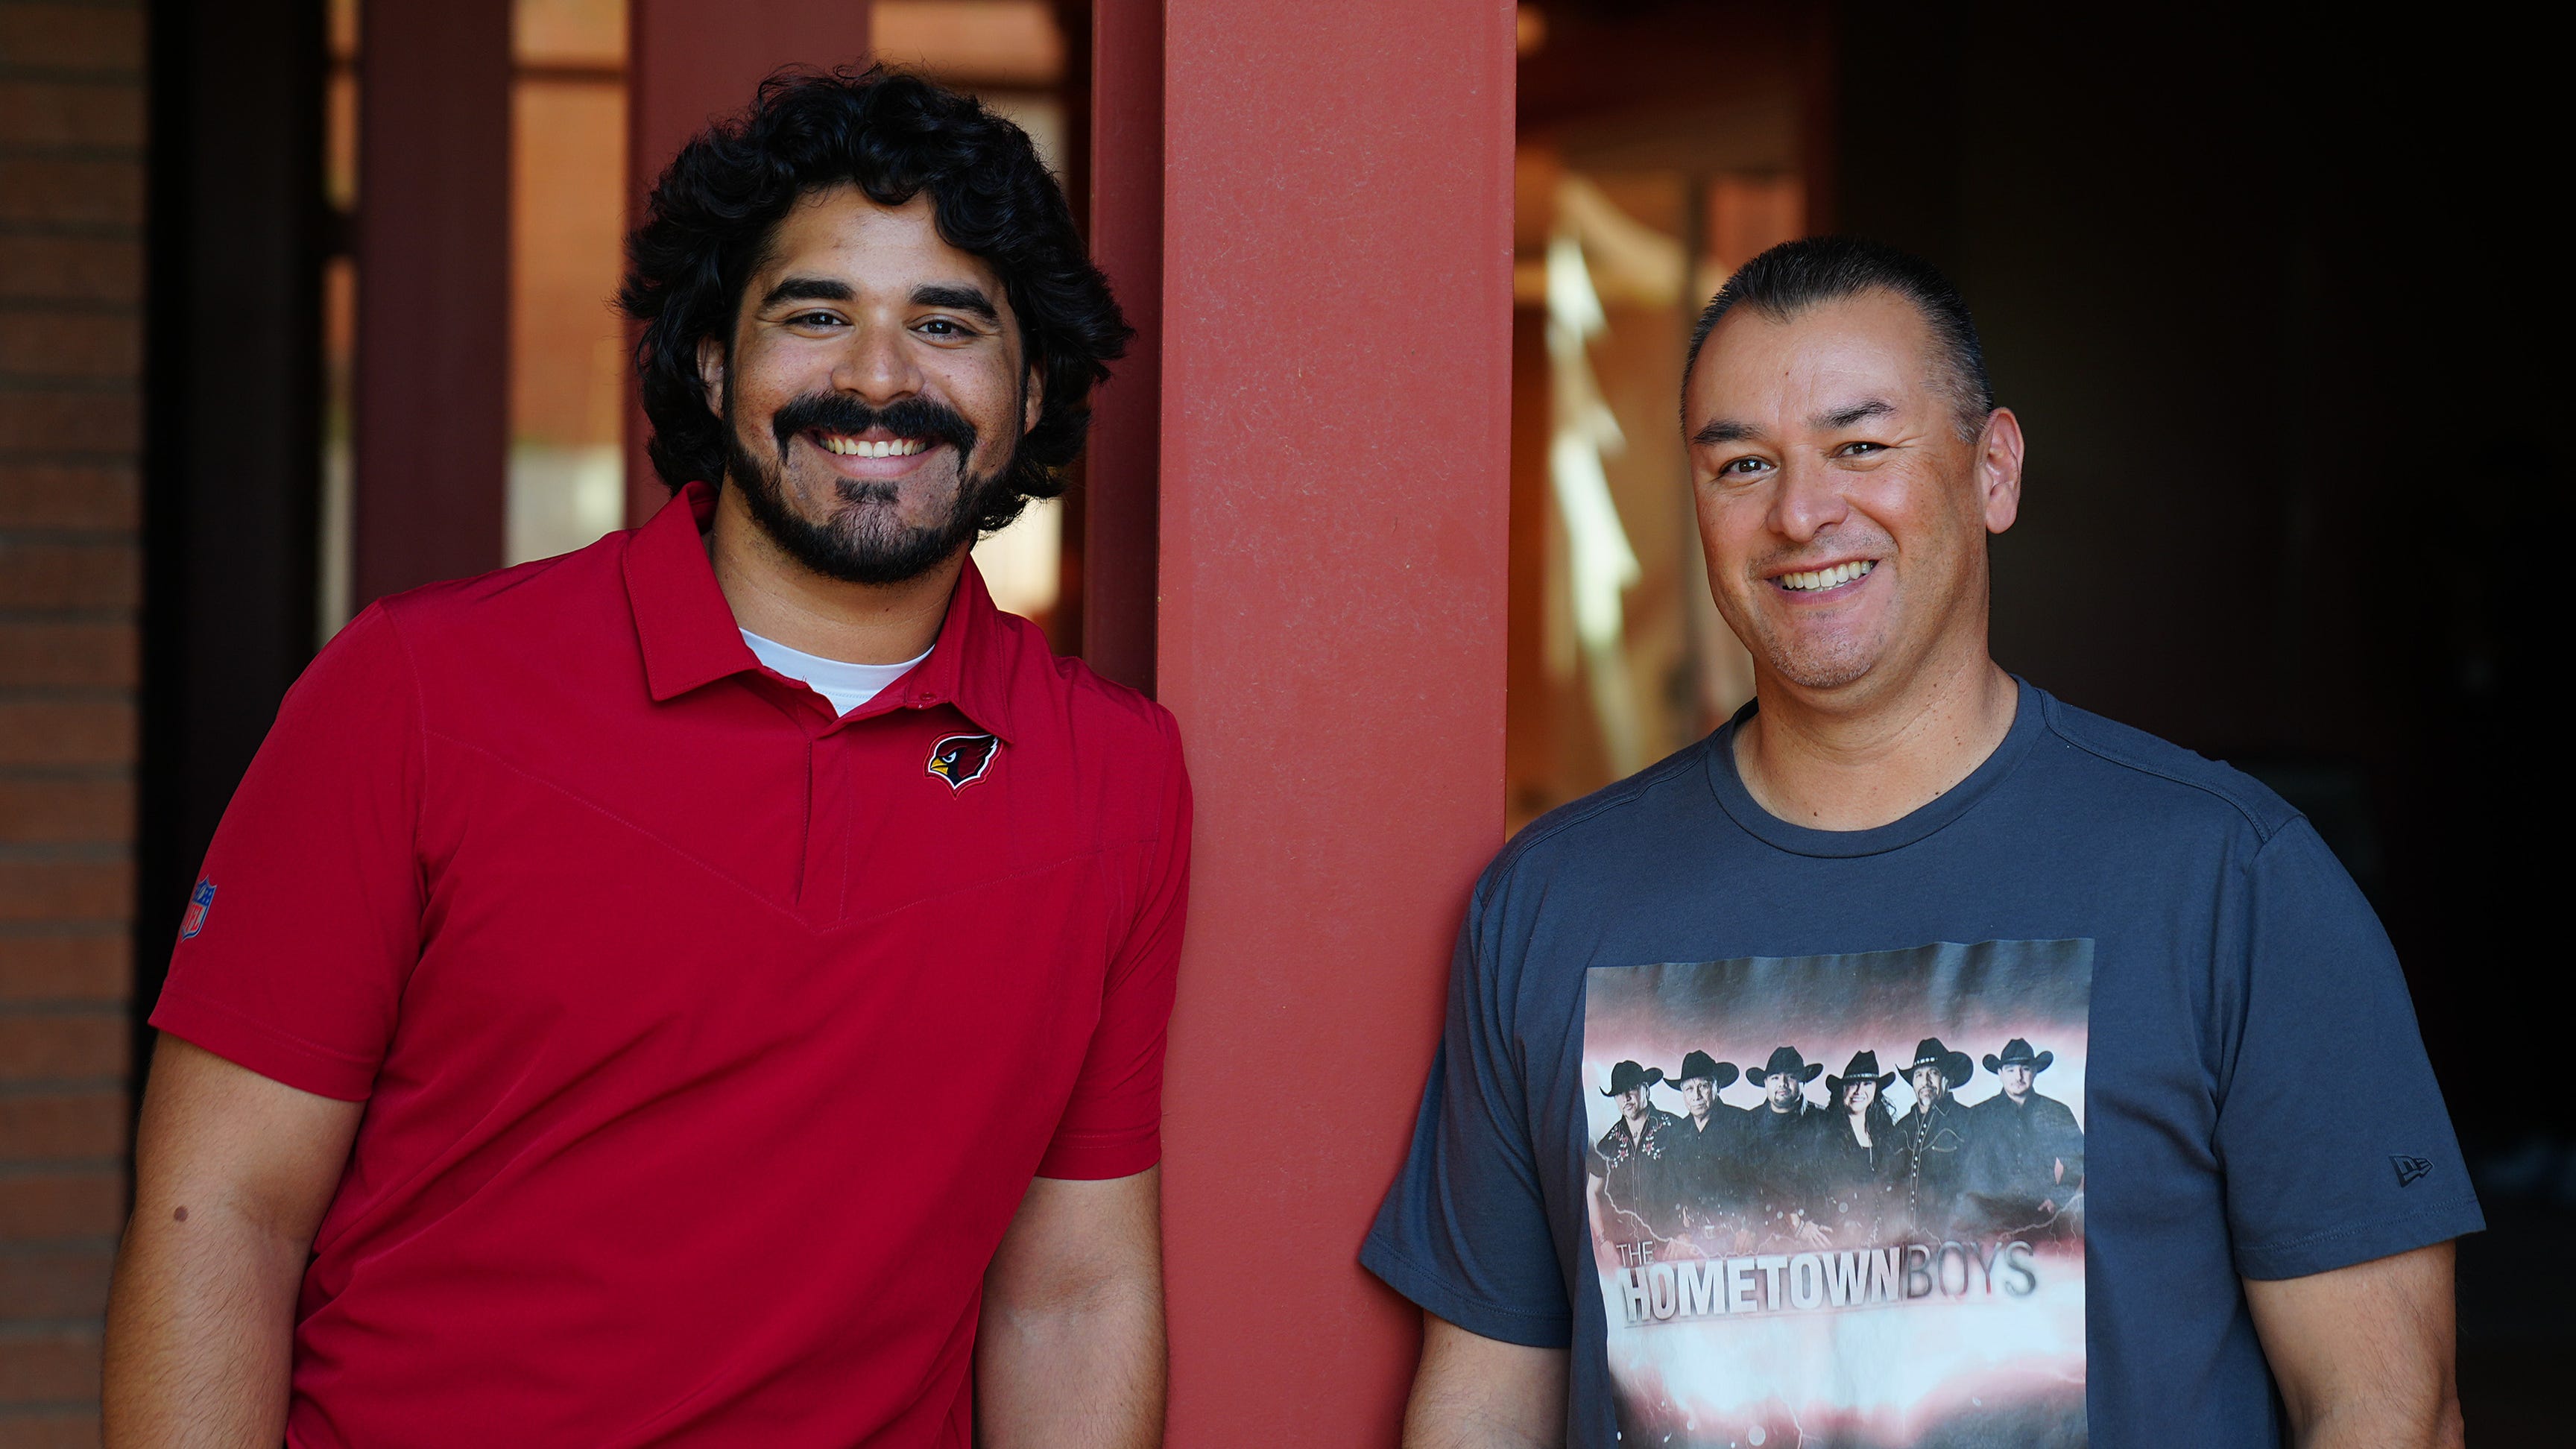 Conoce a José Romeros, 2 fanáticos del fútbol que ayudan a contar la historia de los Cardenales